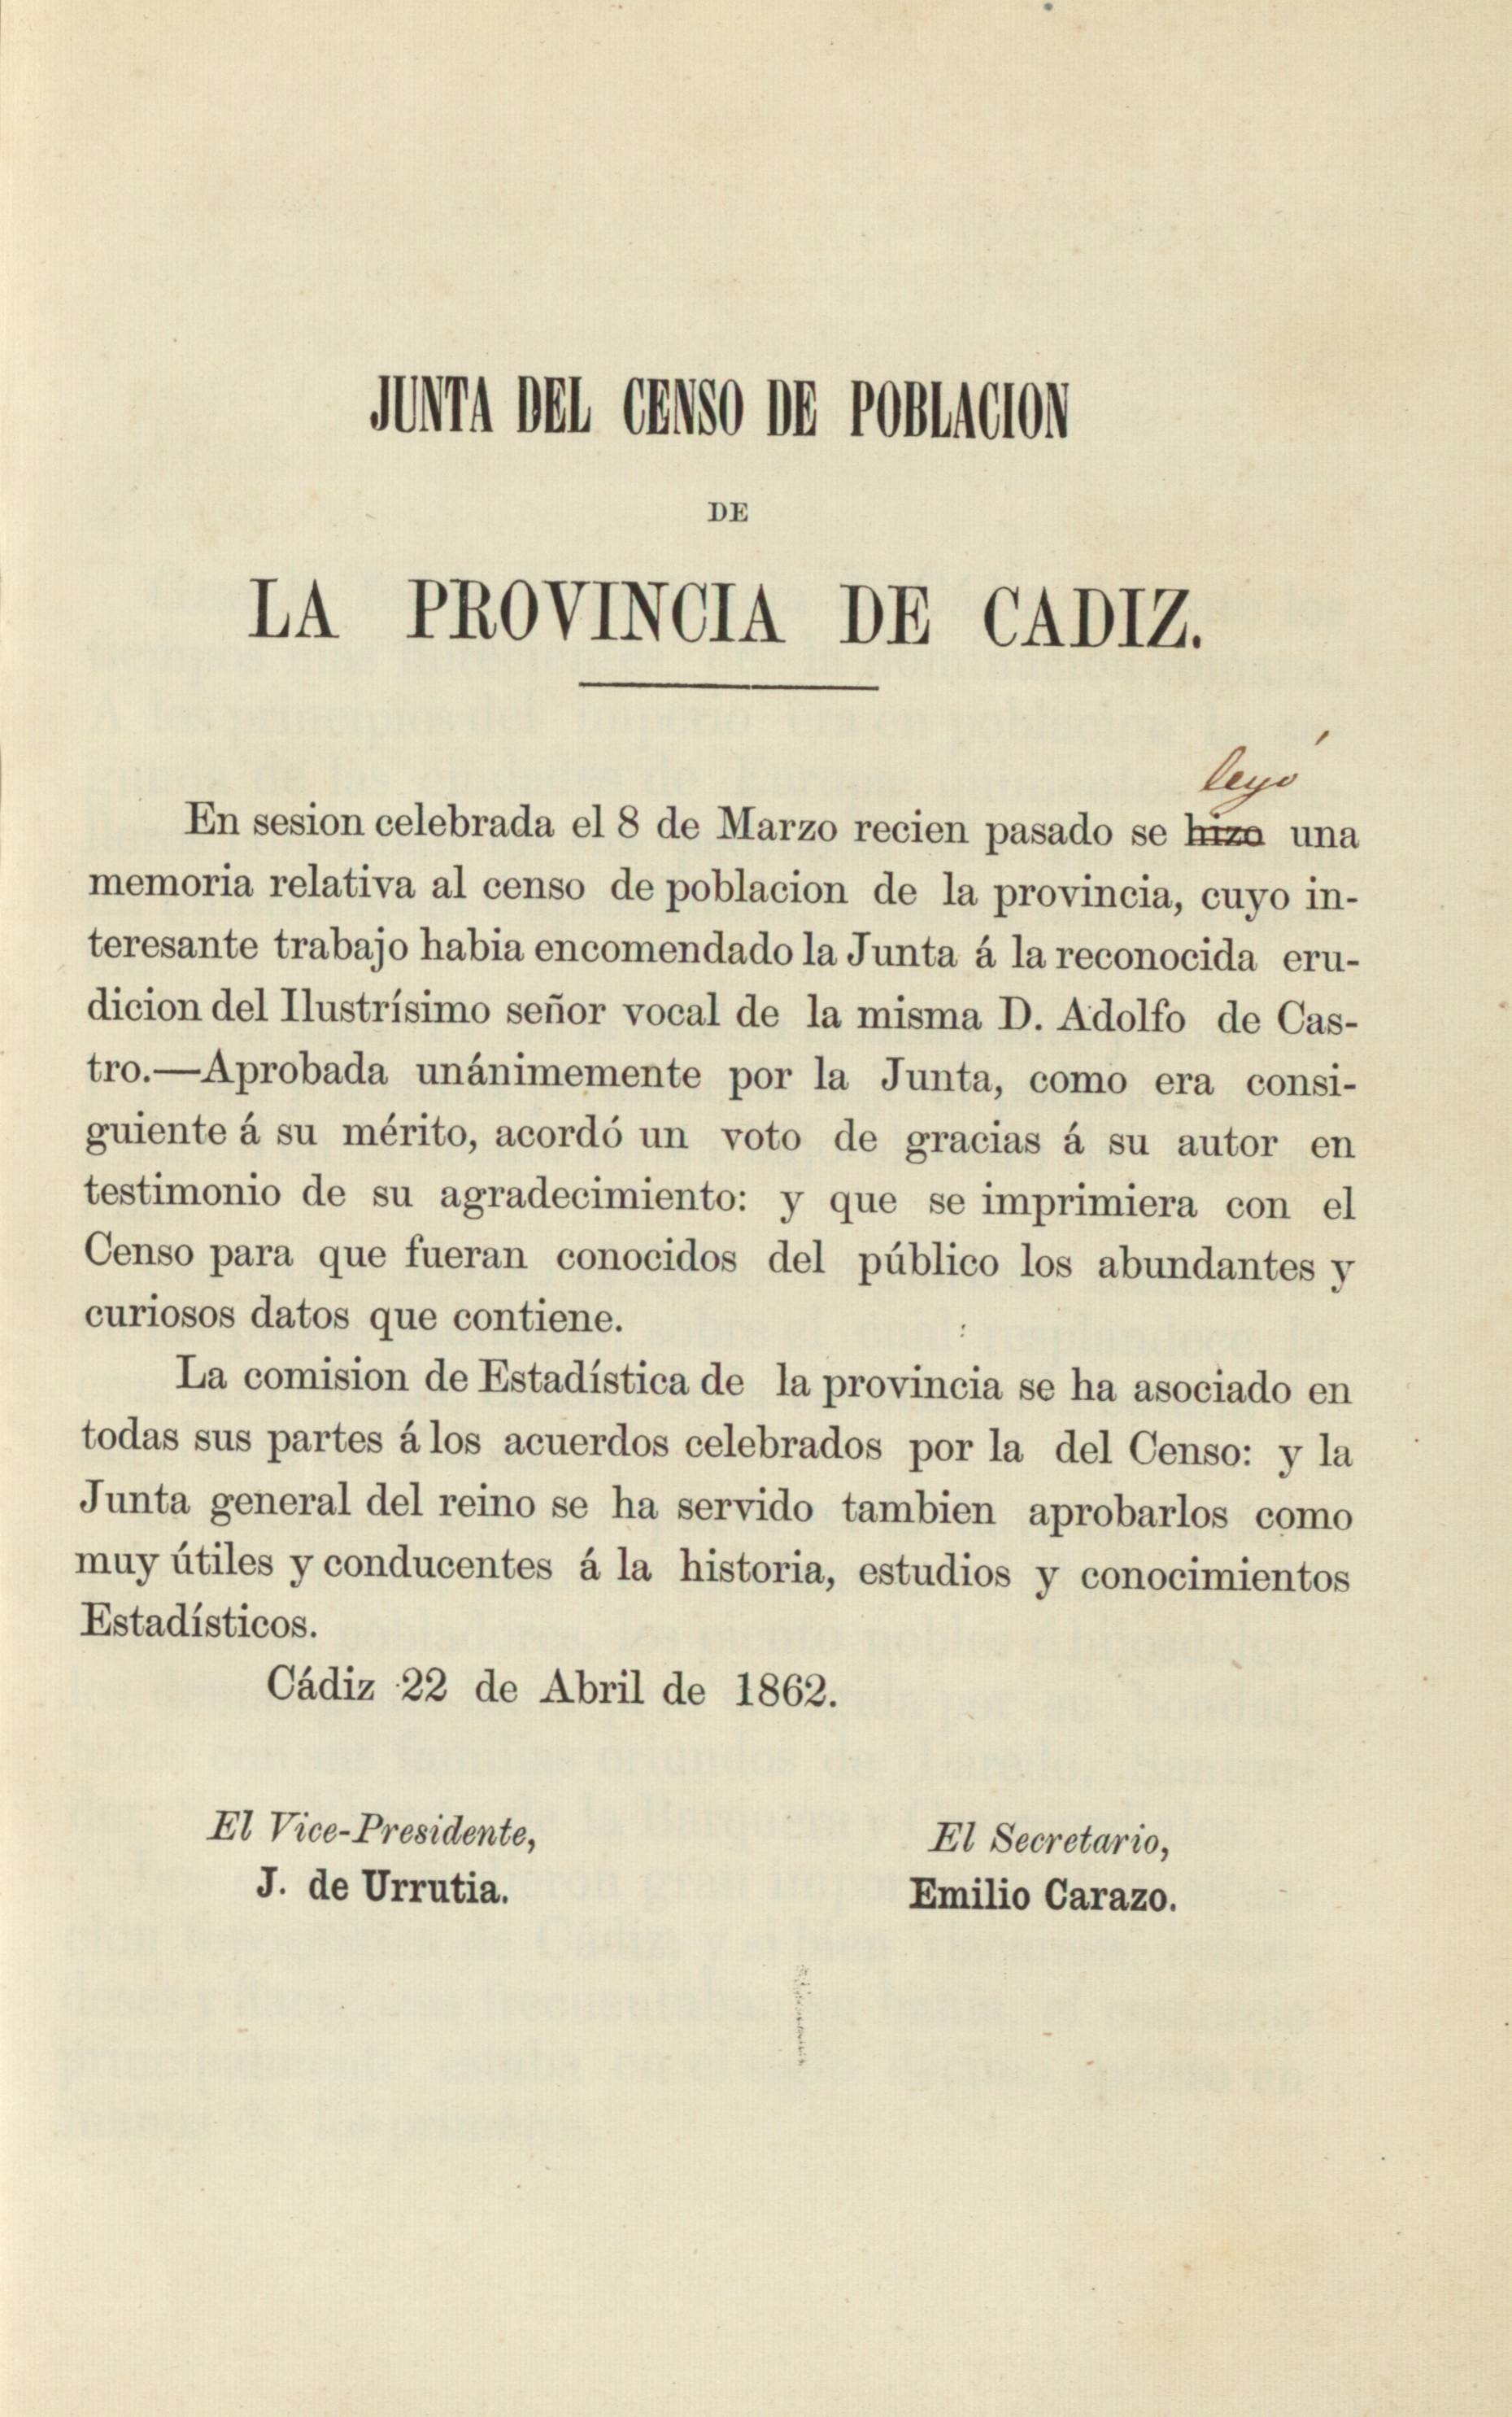 Junta del censo de poblacion de la provincia de Cadiz